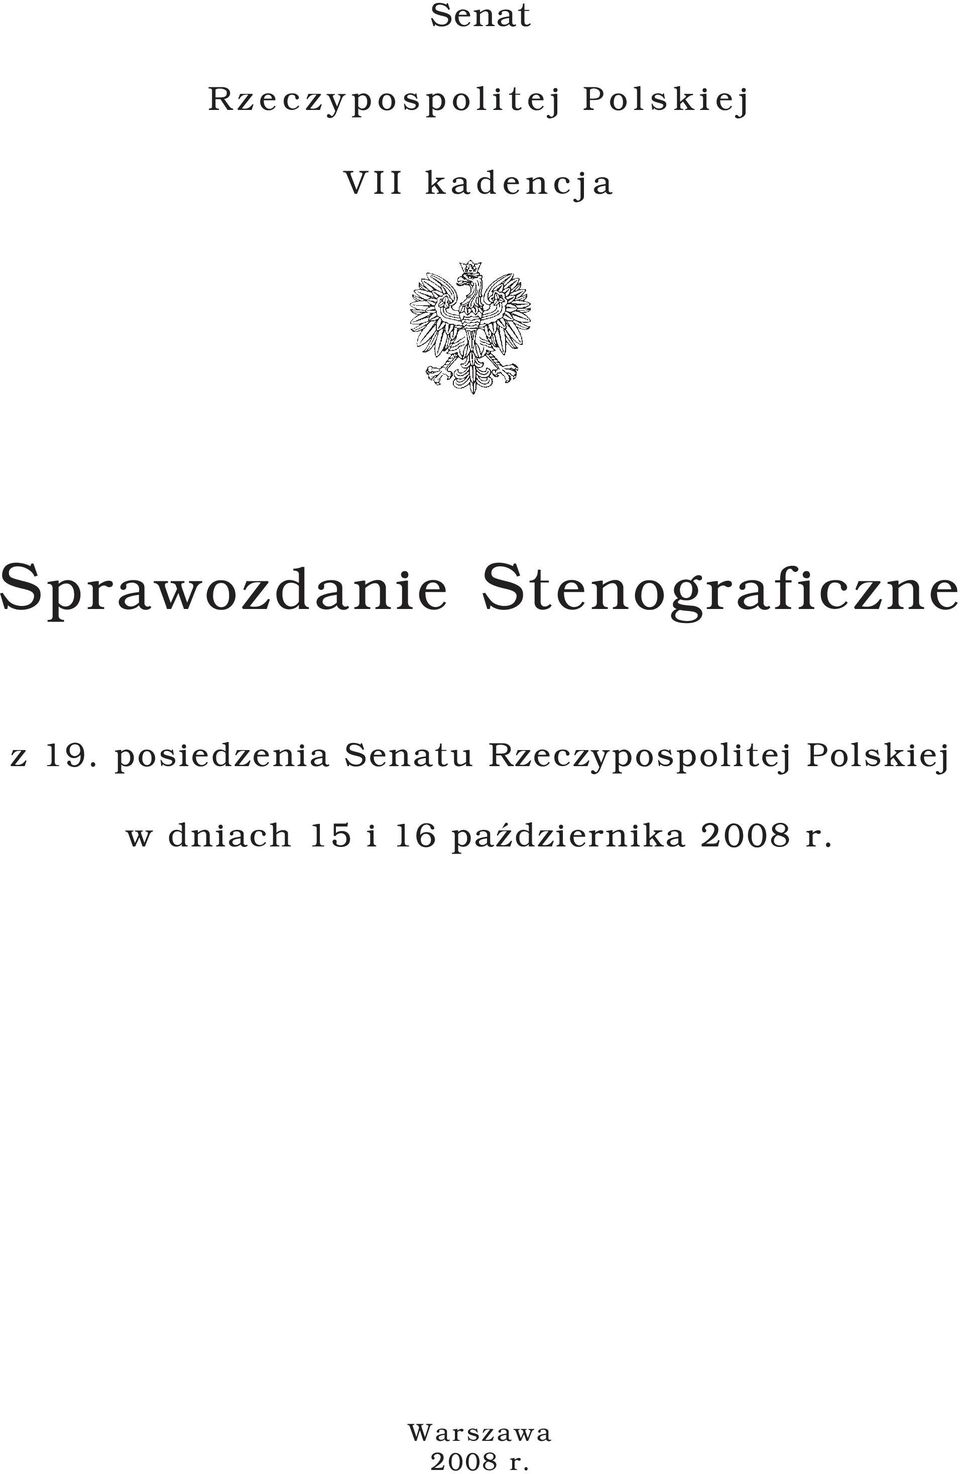 z 19. posiedzenia Senatu Rzeczypospolitej Polskiej w